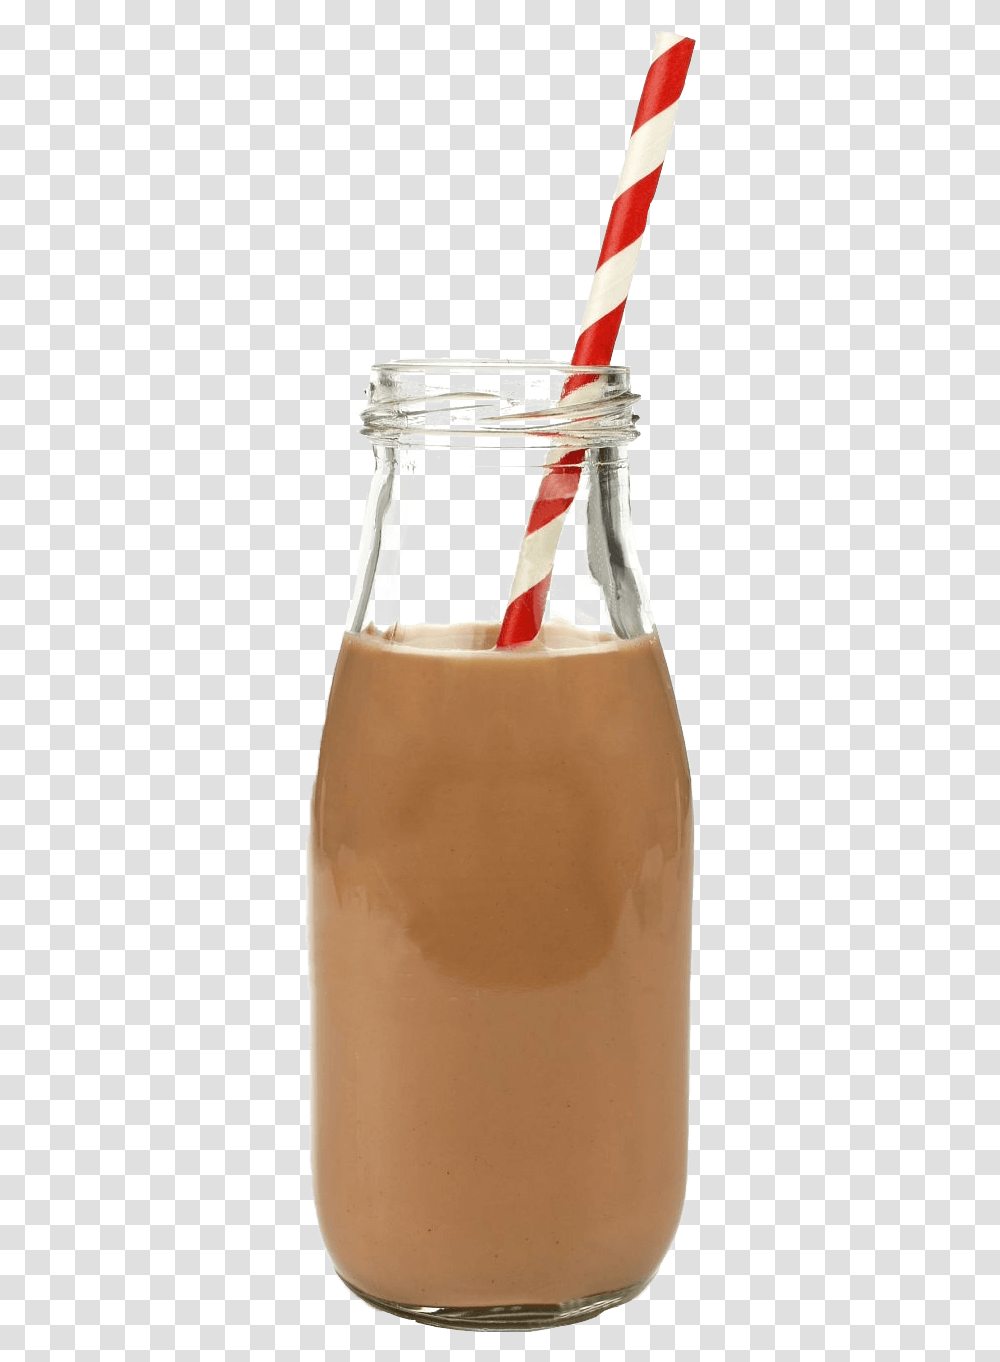 Chocolate Milk Bottle, Beverage, Drink, Soda, Juice Transparent Png